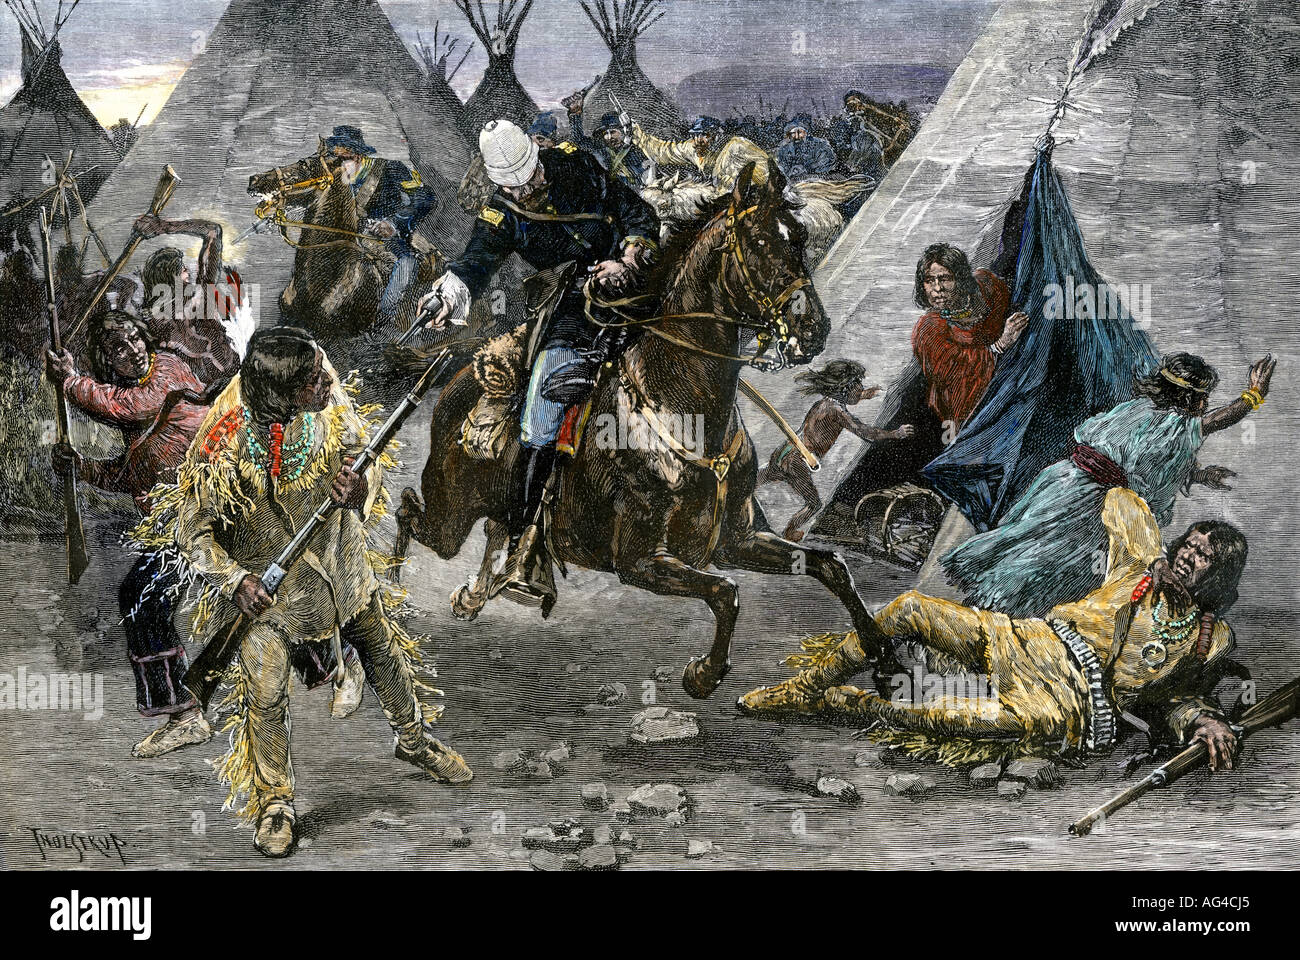 Cavalerie nous attaquer un village indien Sioux de 1880. À la main, gravure sur bois Banque D'Images